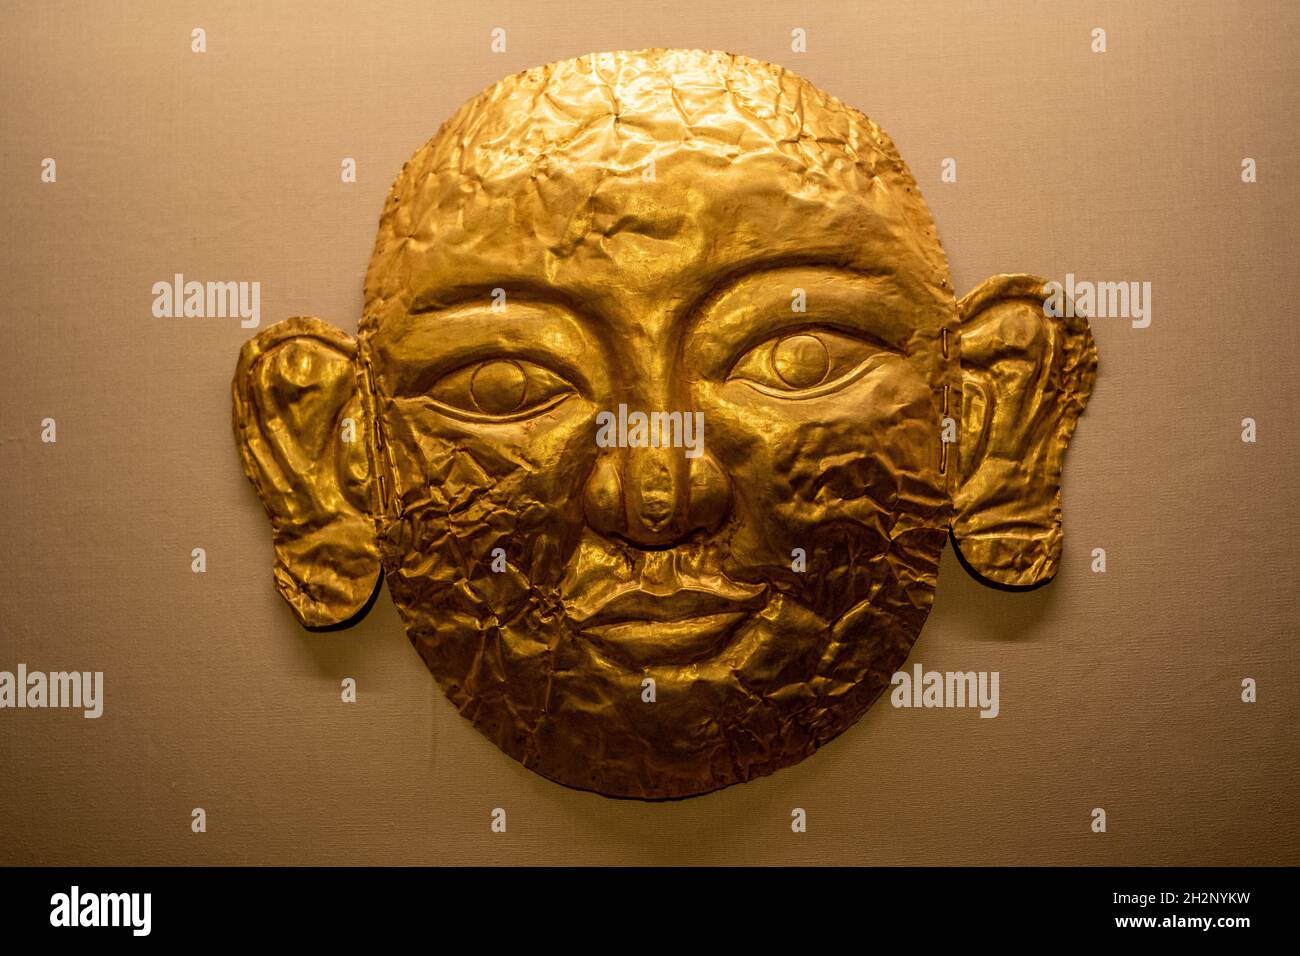 Goldene Maske der Liao Dynastie (916-1125) Sammlung des Nationalmuseums von China. Höchstwahrscheinlich eine weibliche Maske. Stockfoto